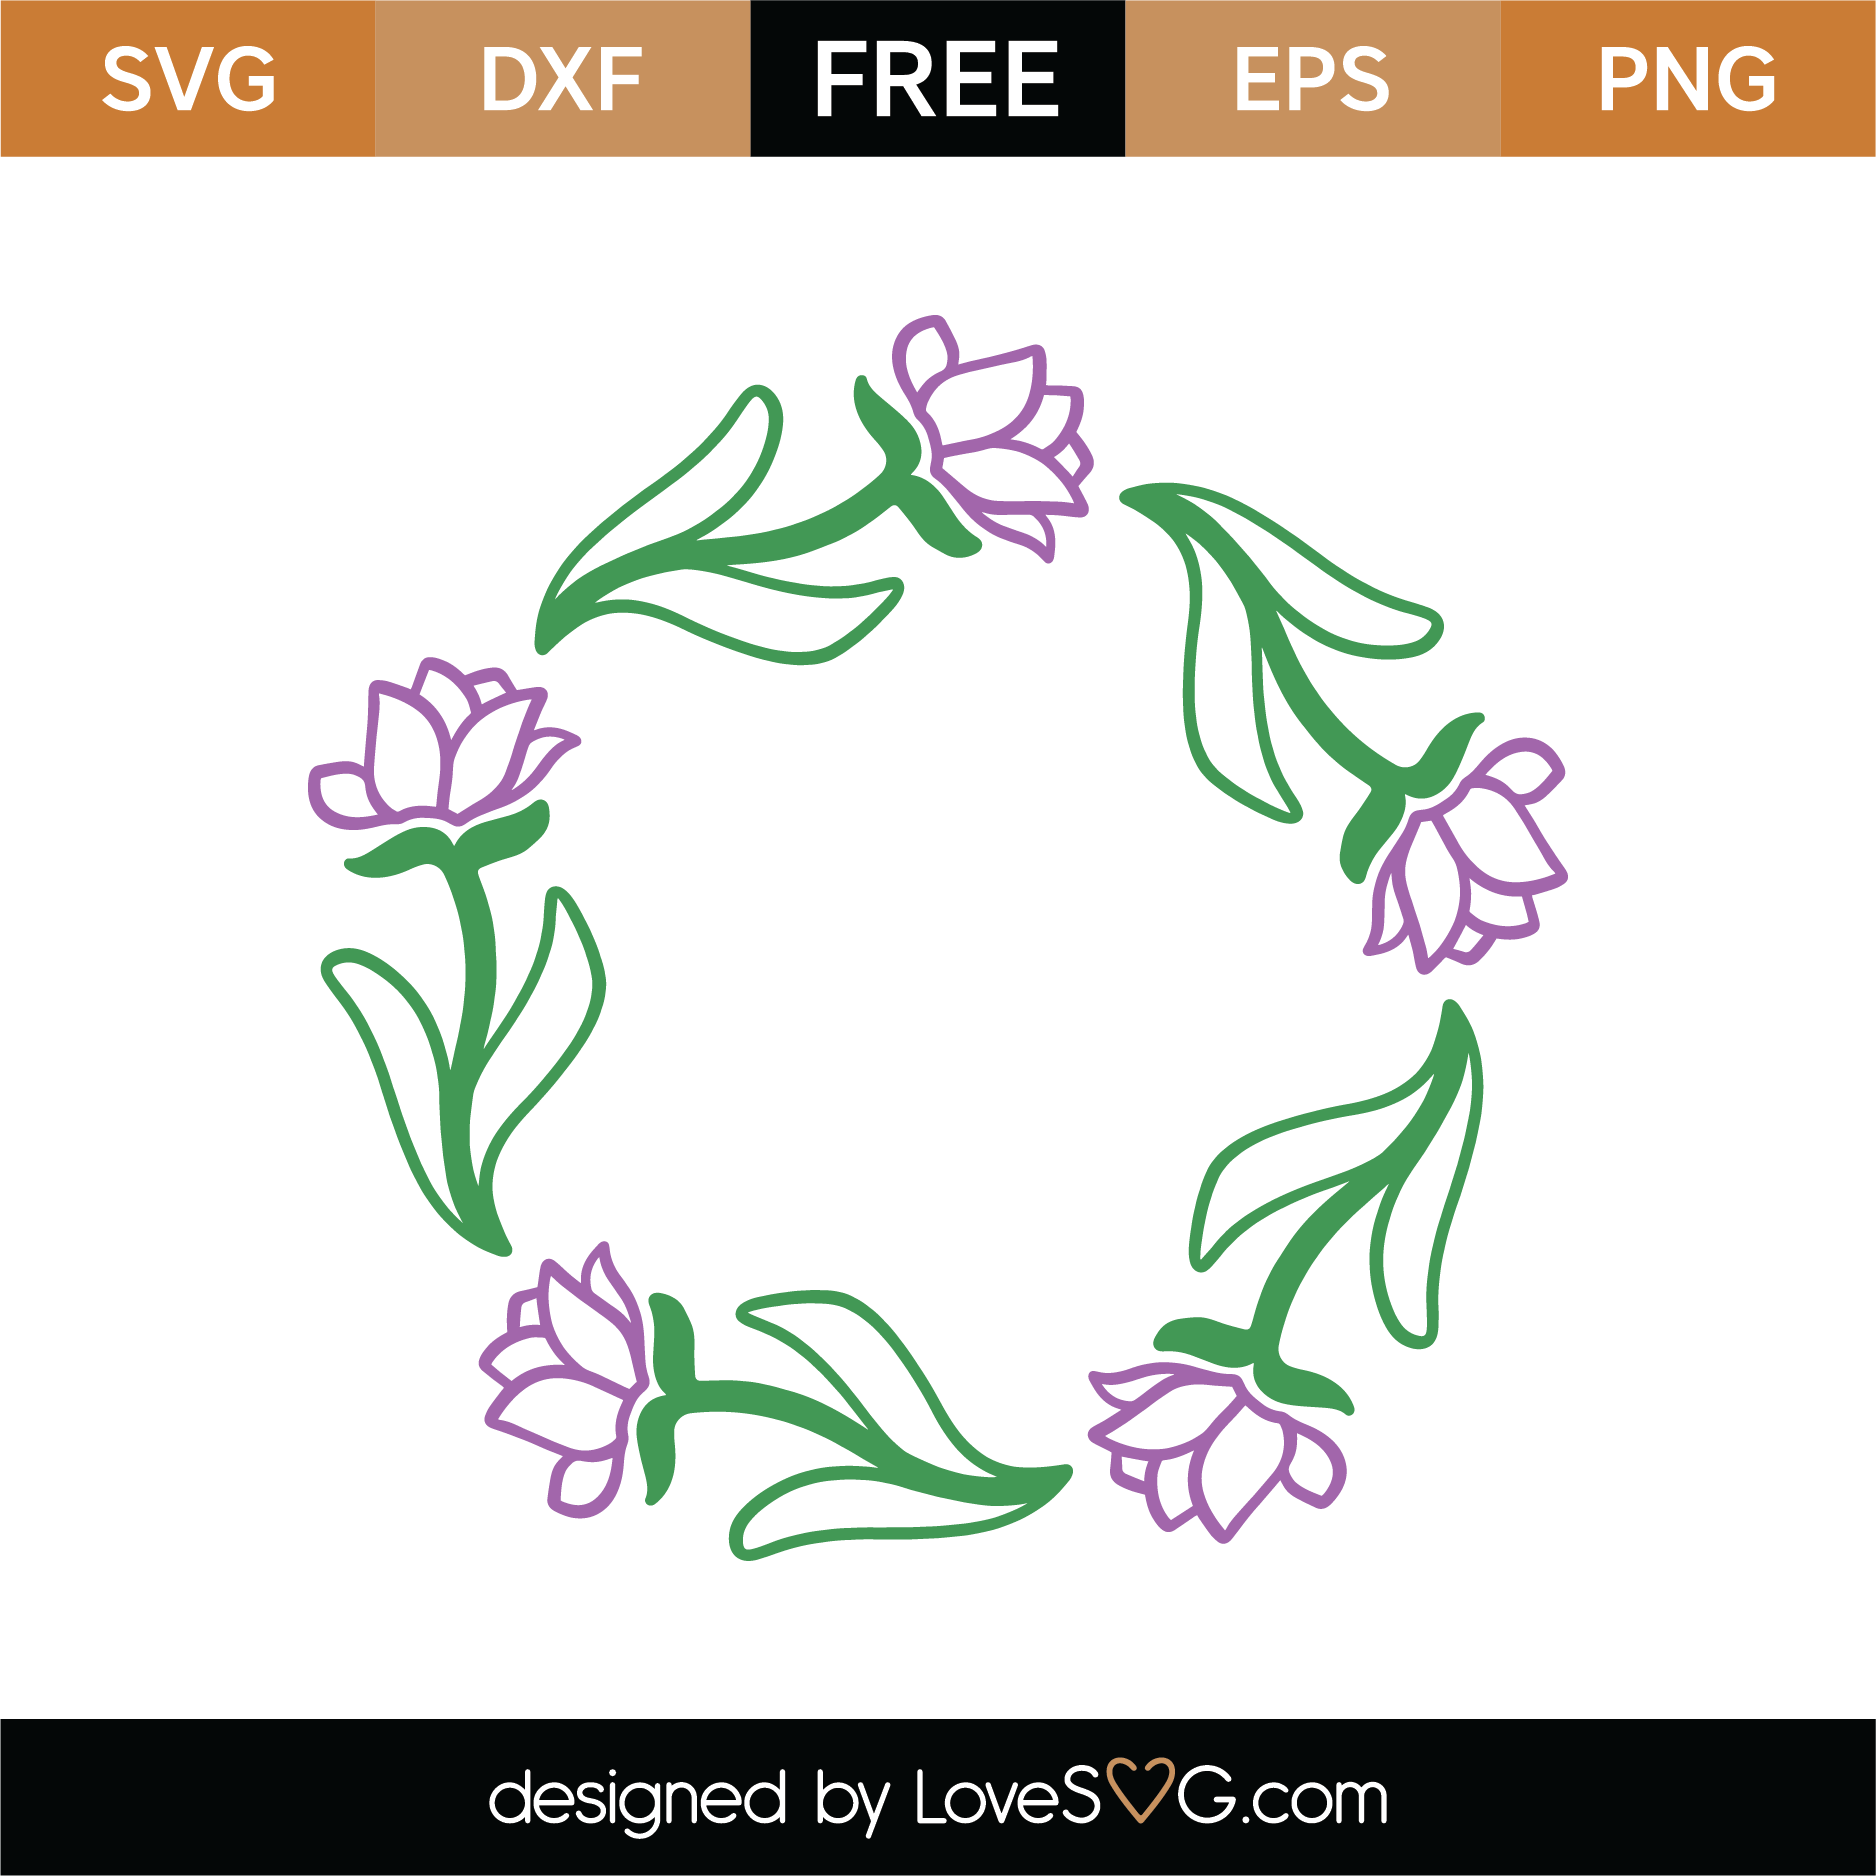 Download Free Floral Monogram Frame SVG Cut File | Lovesvg.com